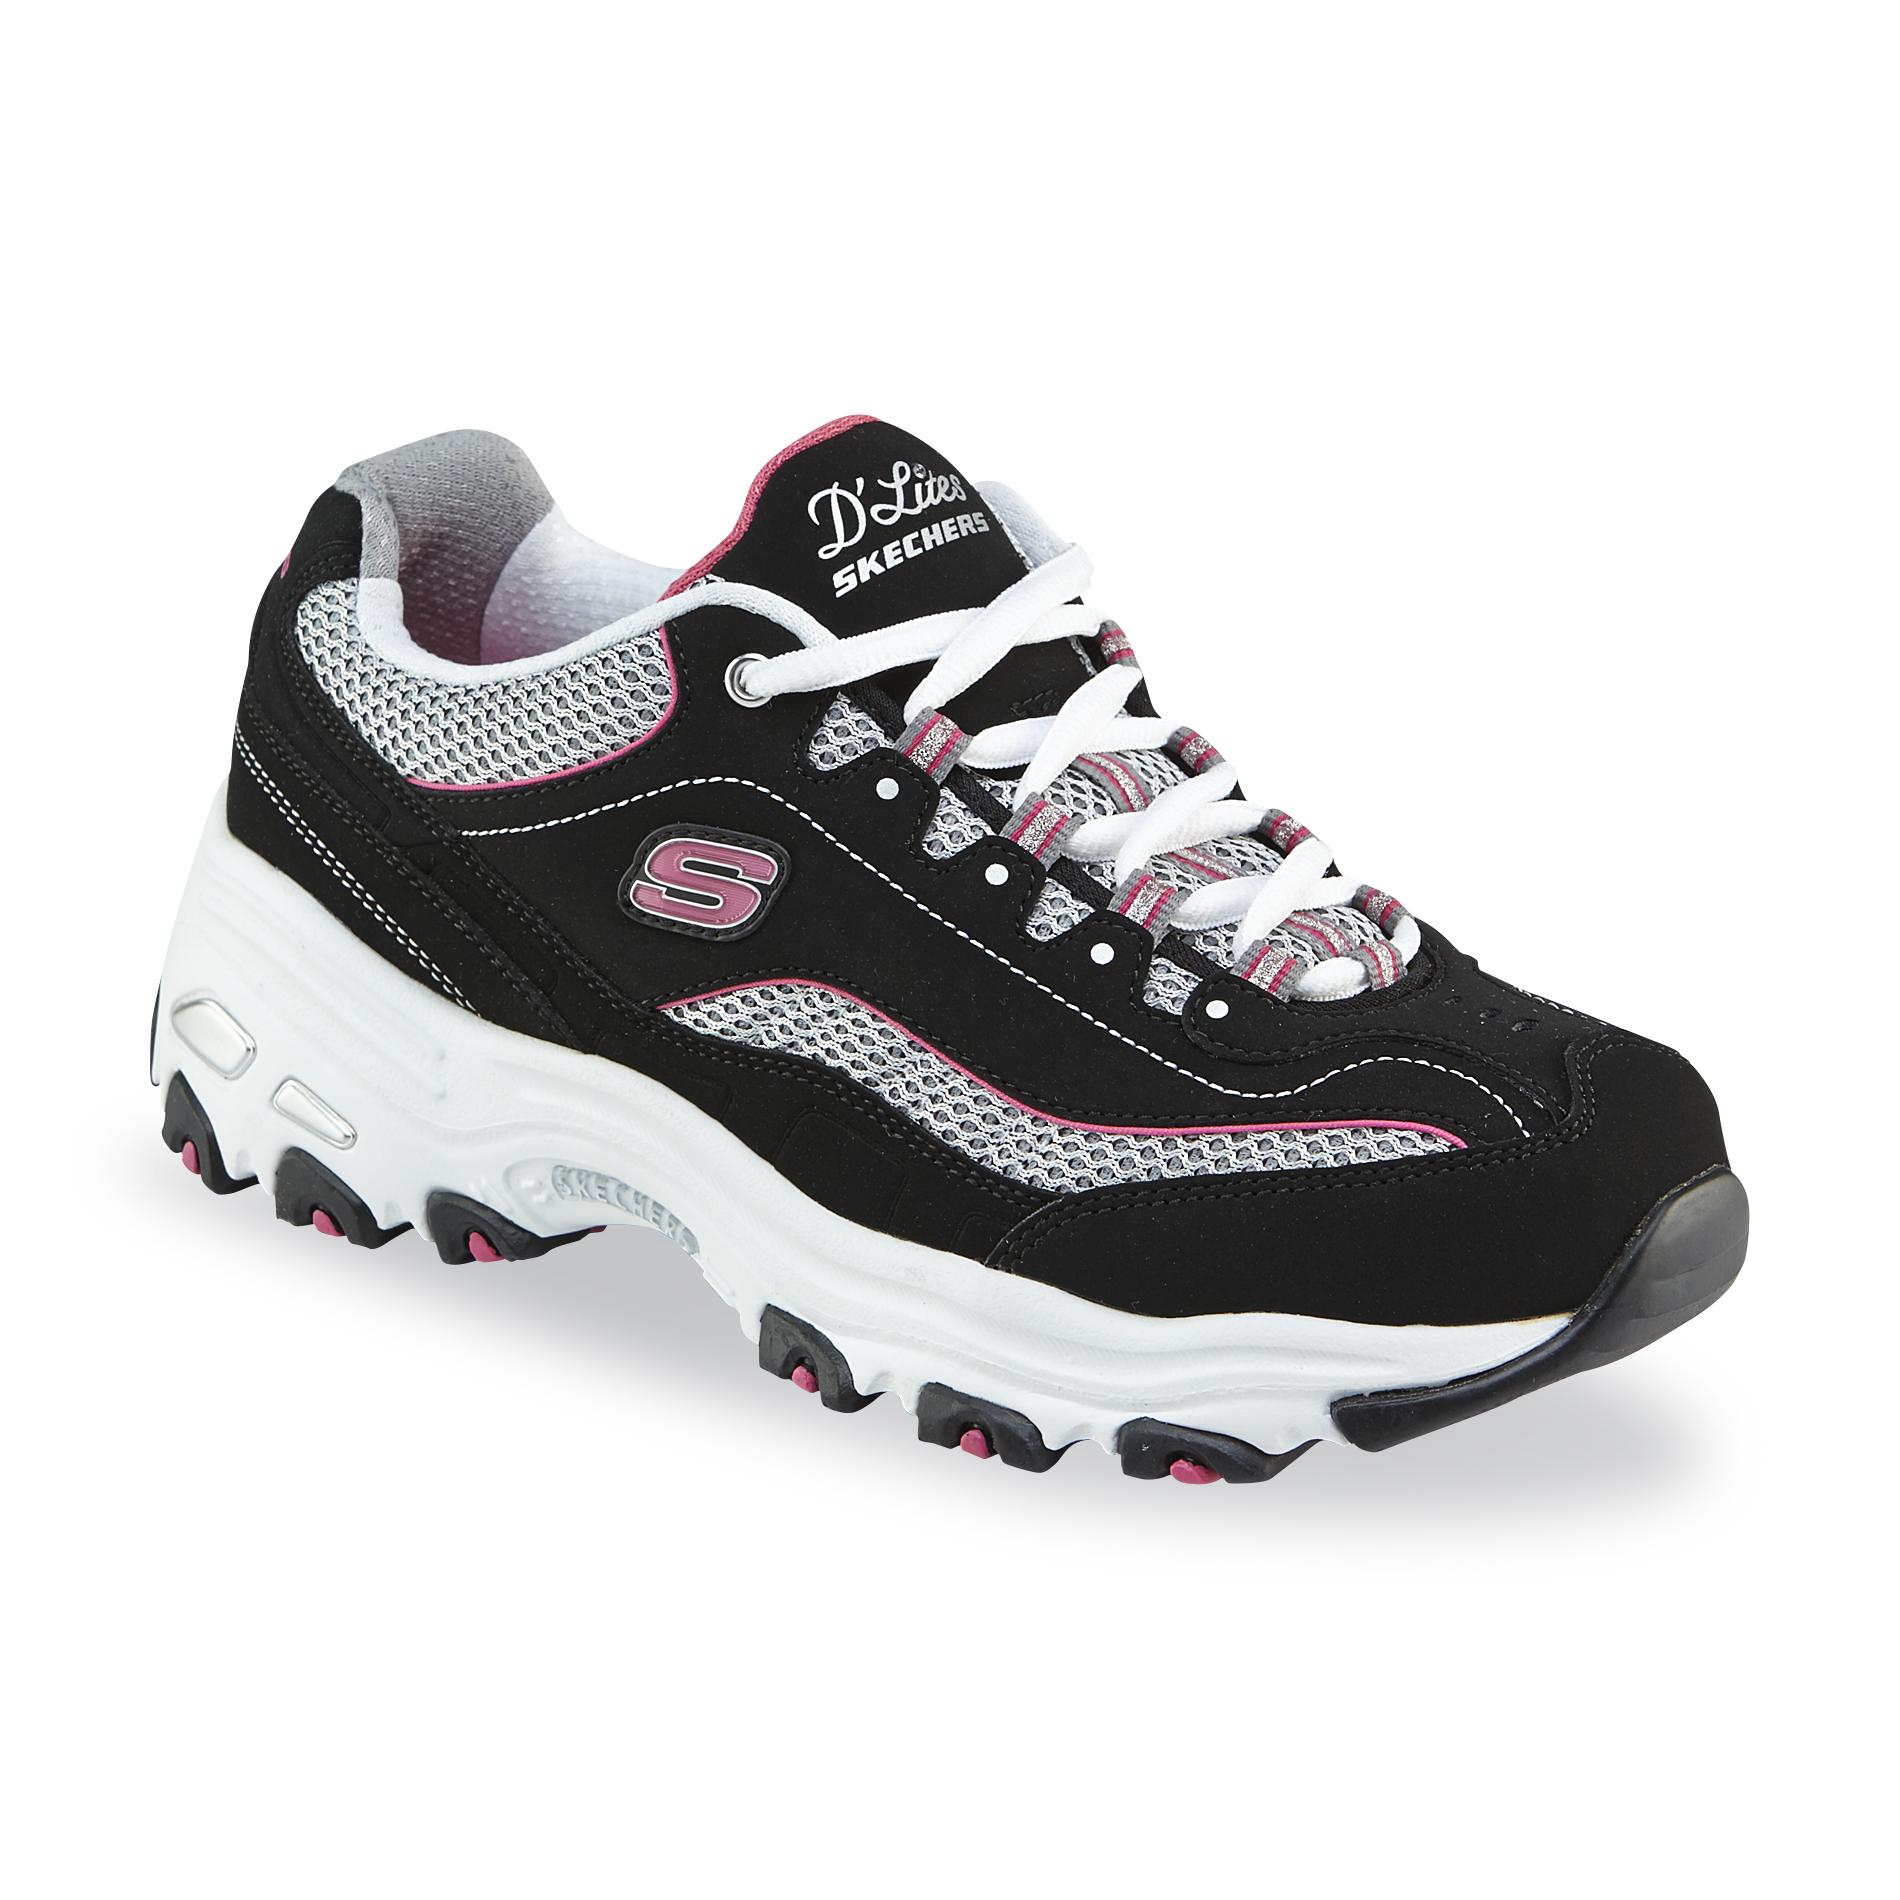 Skechers sneakers skechers womenu0027s du0027lites life saver wide width athletic shoe -  black/pink/white CRMQXTU